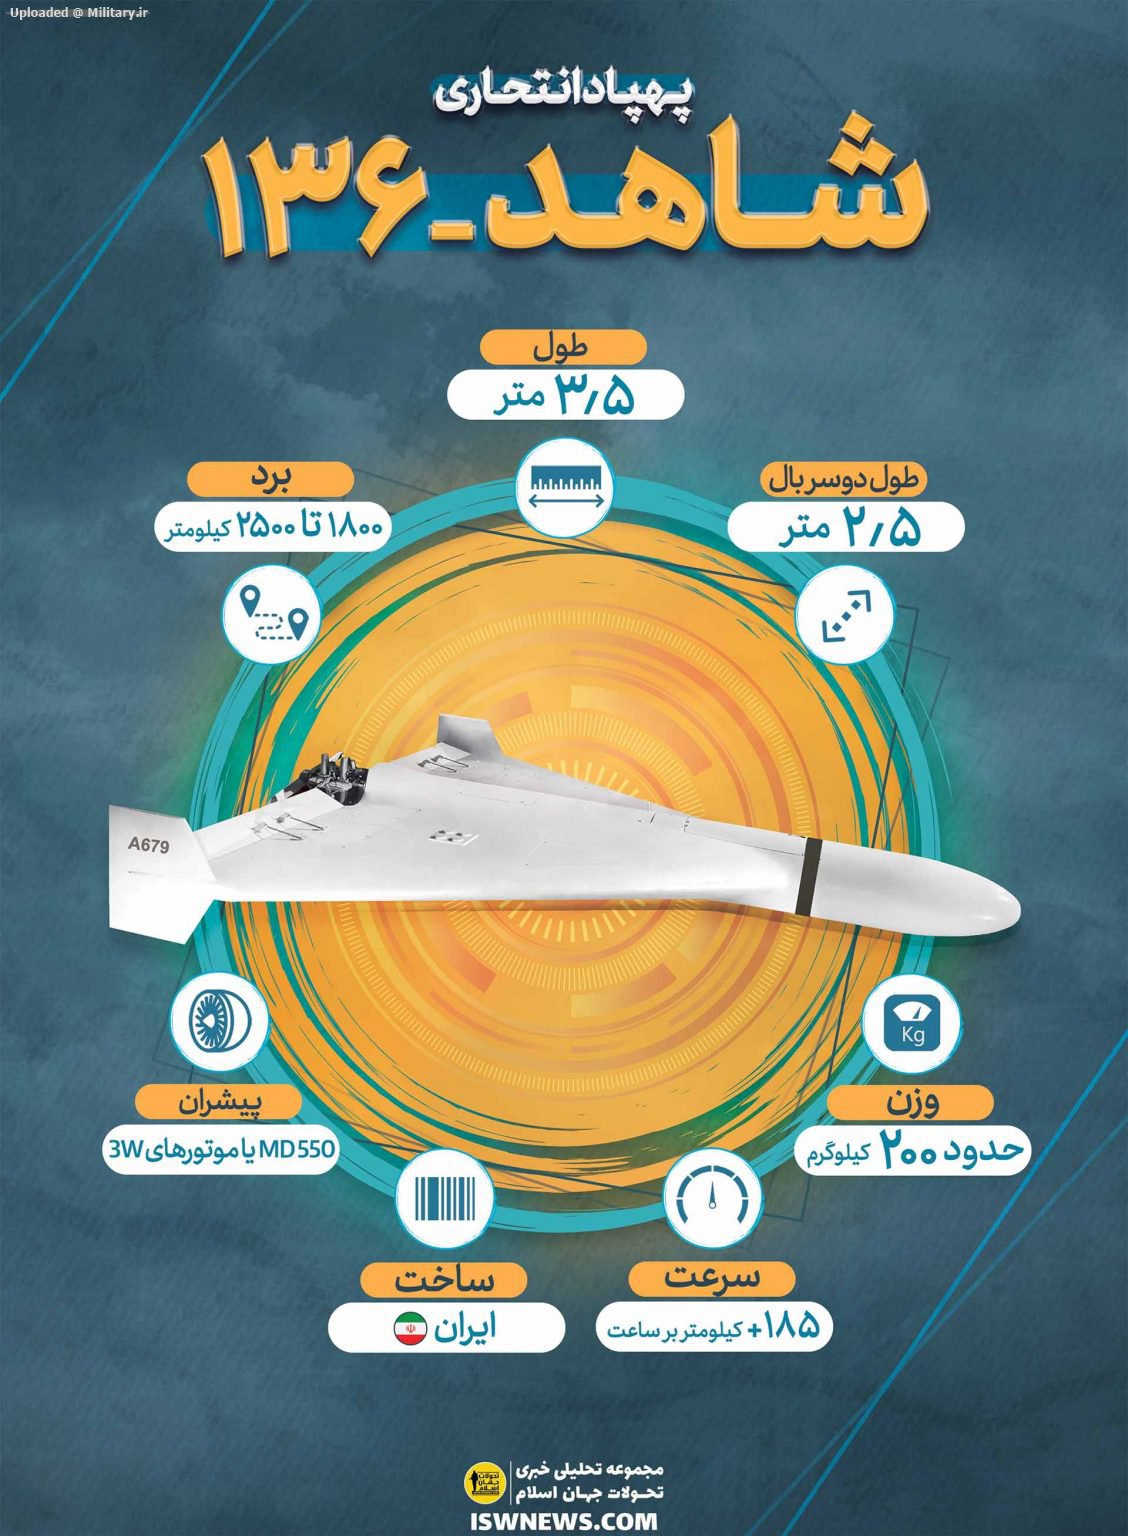 Shahed-136-drone-FA-copy-1128x1536.jpg